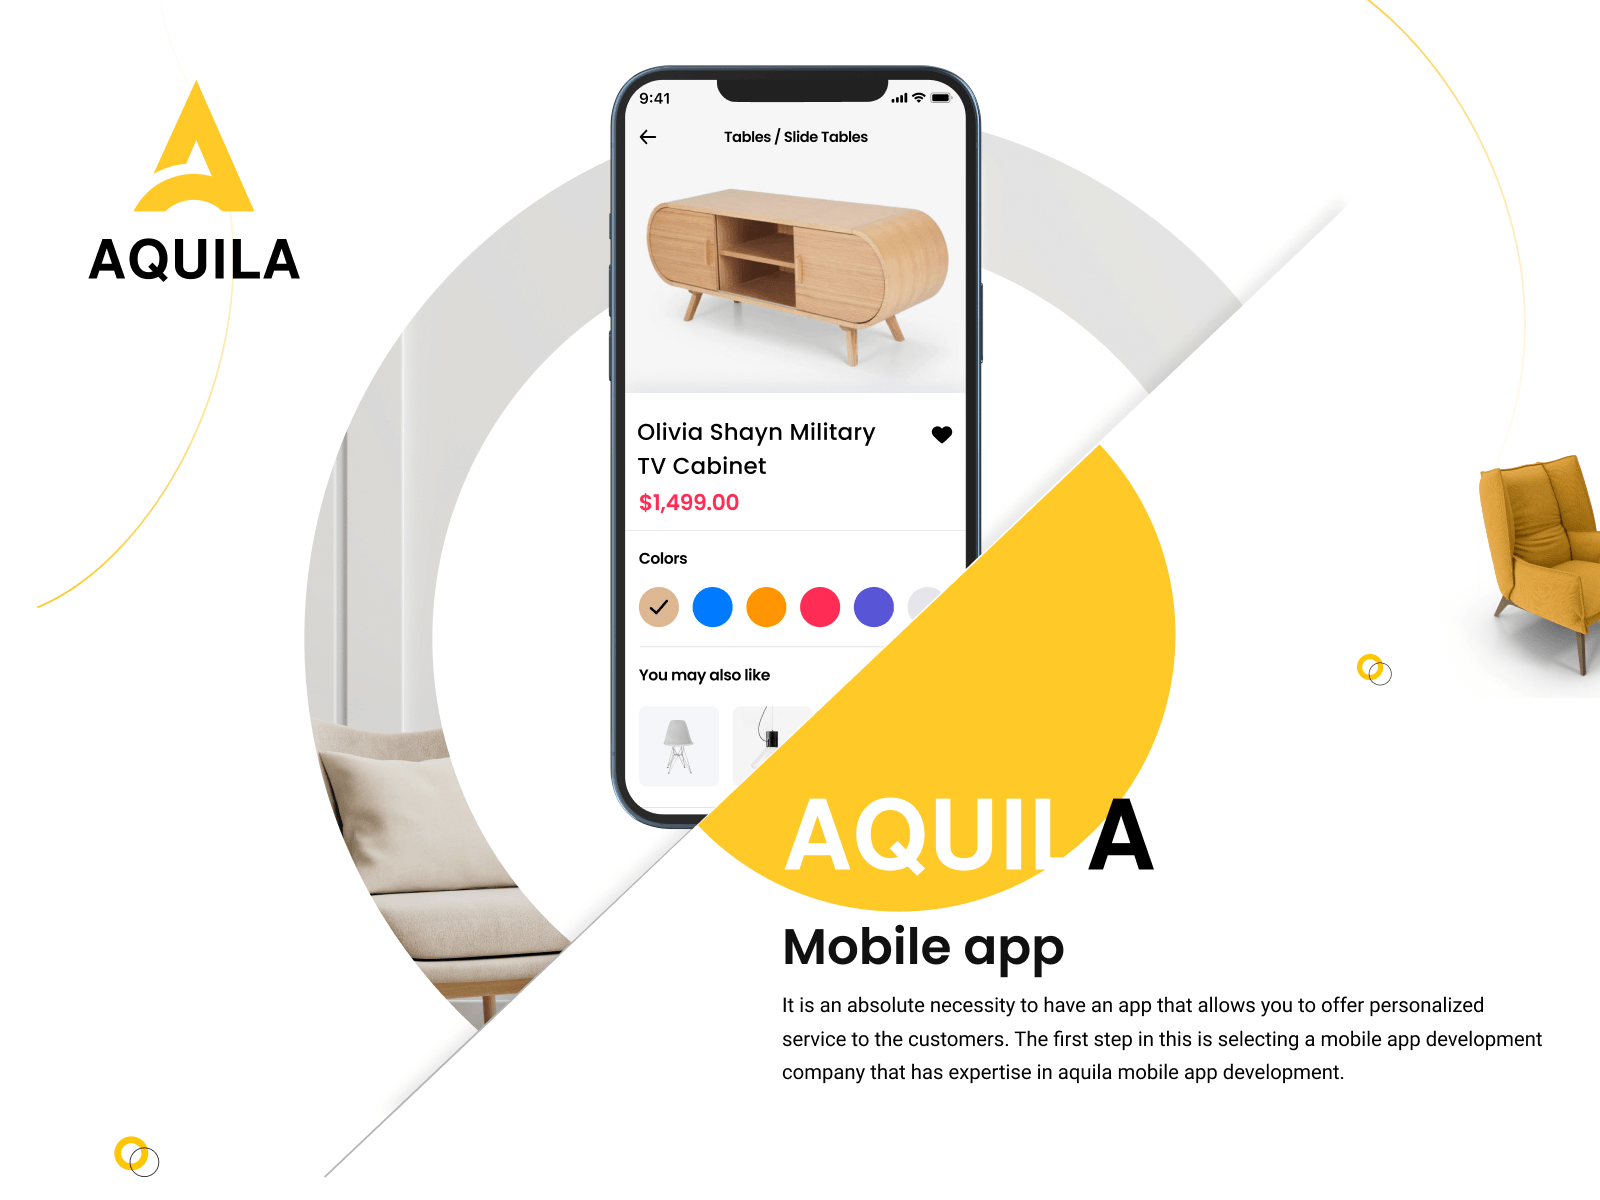 Aquila mobile app